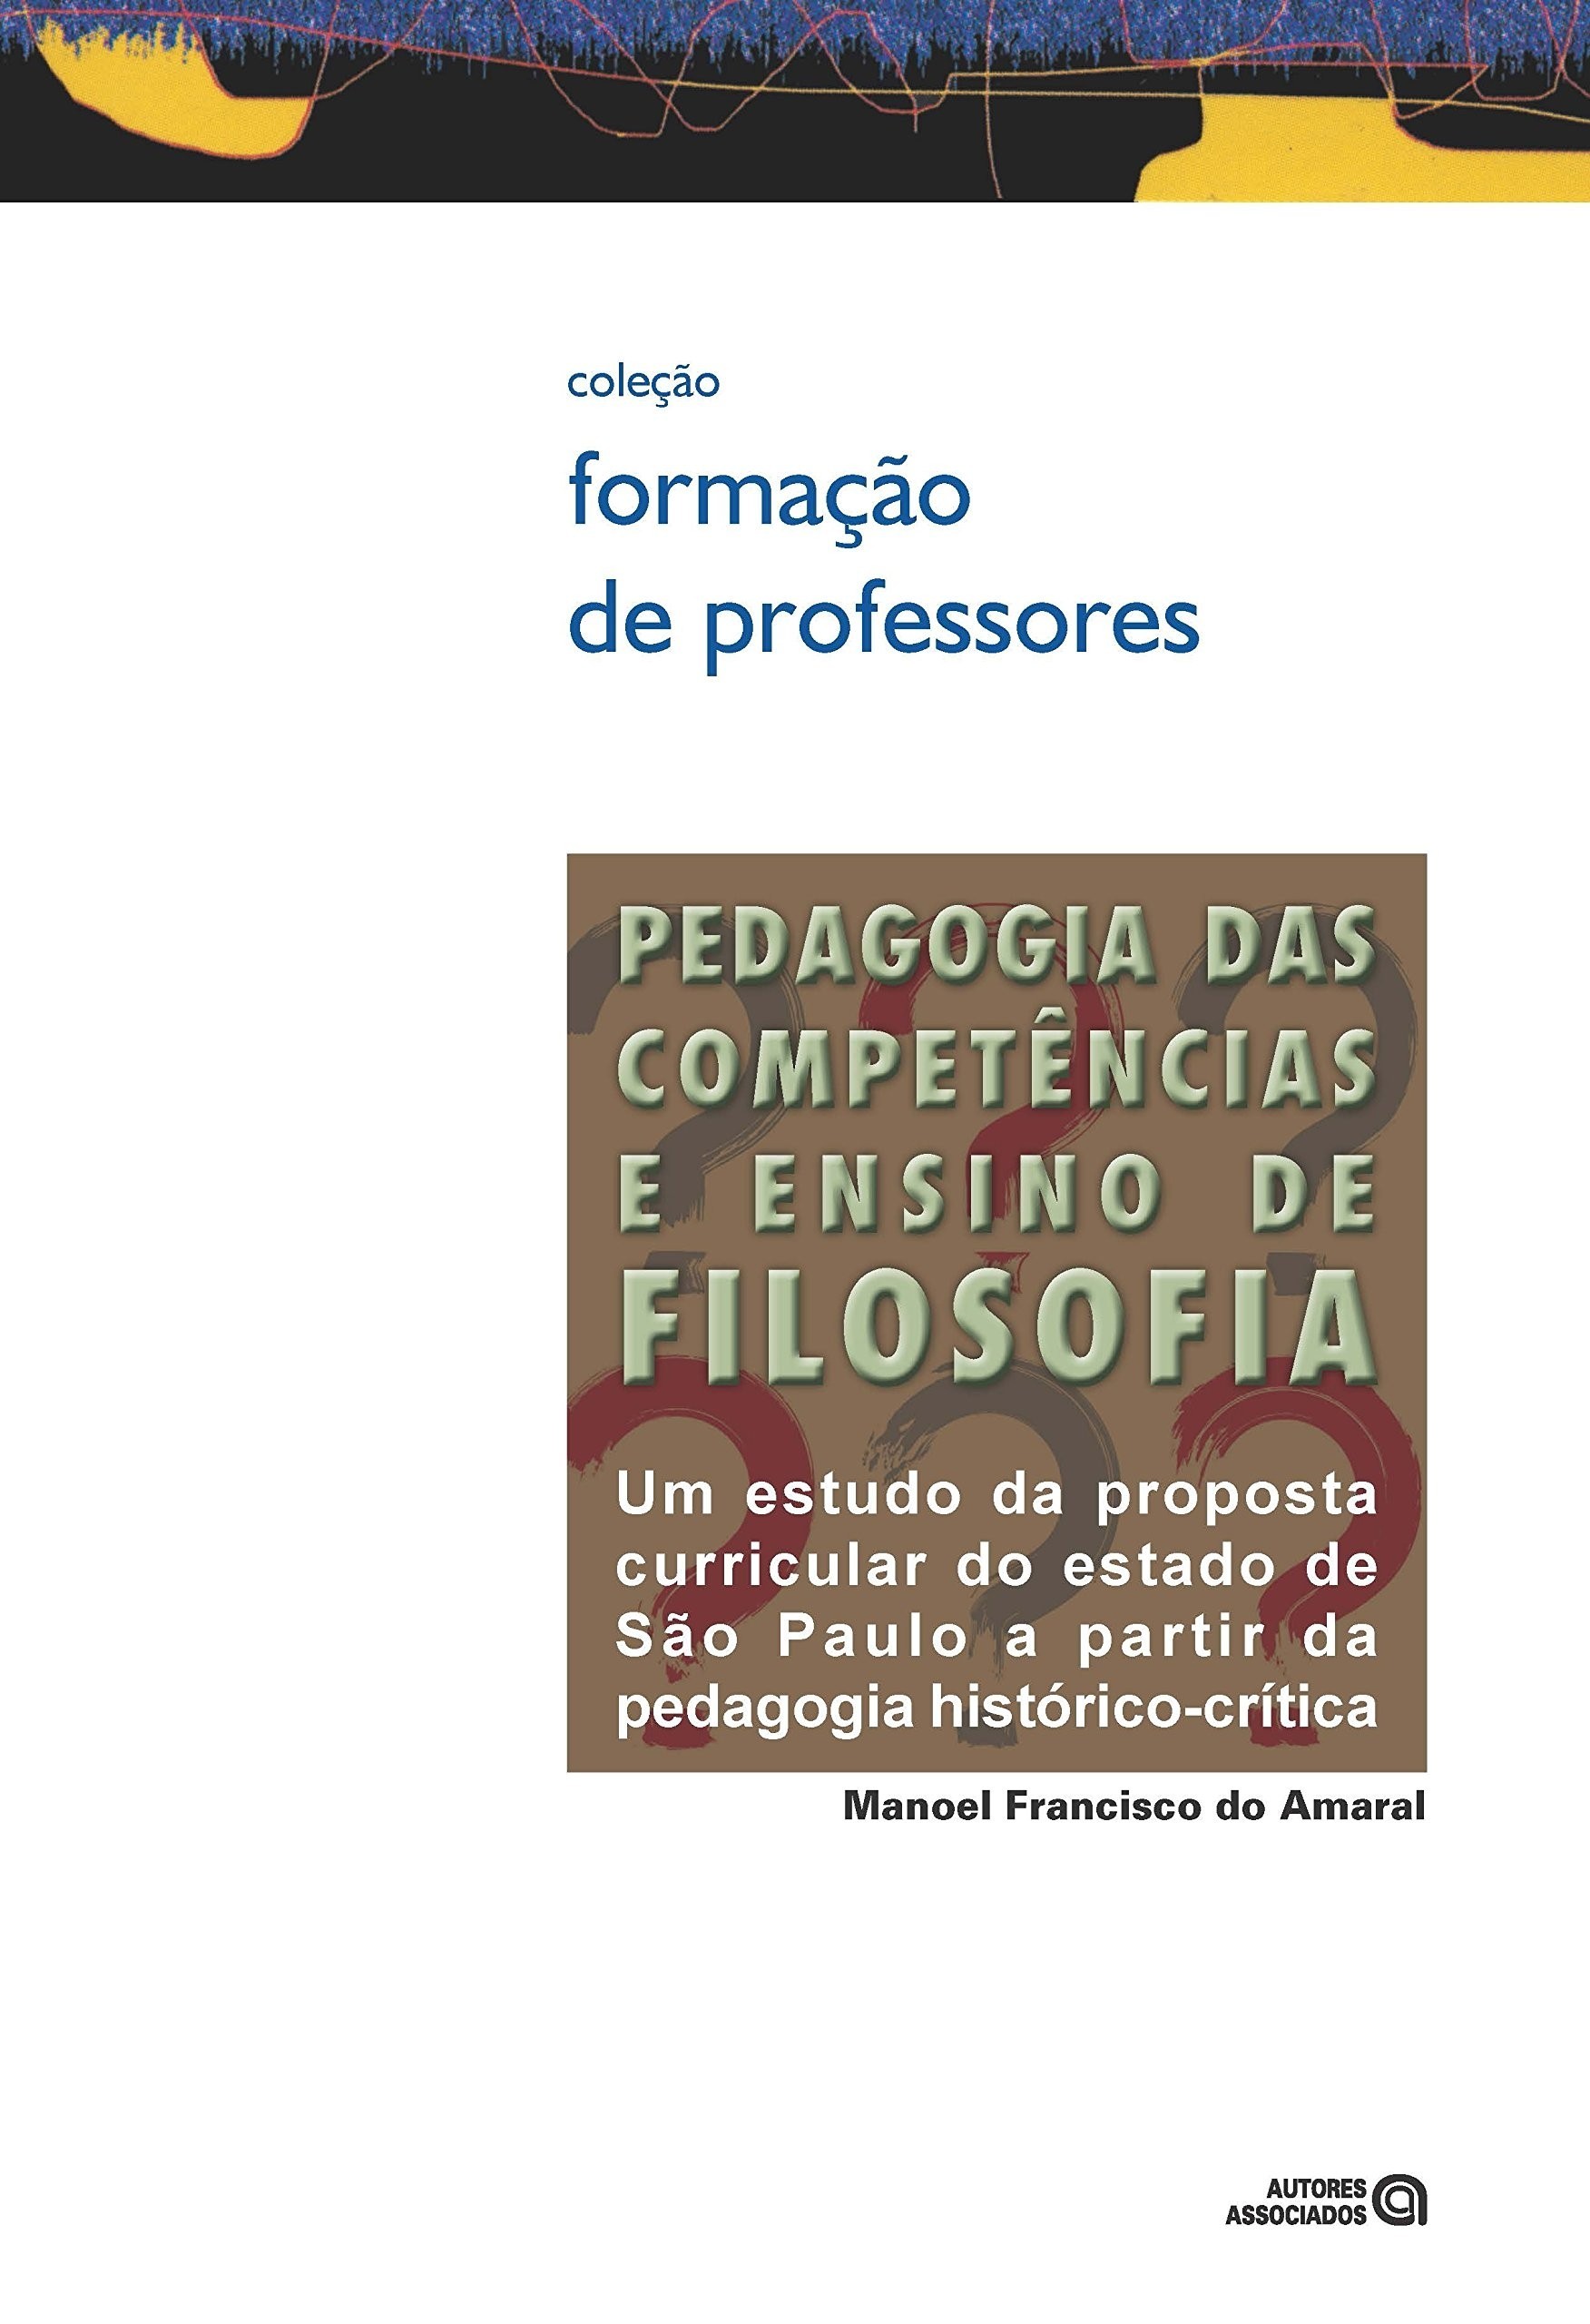 Pedagogia das Competências e Ensino De Filosofia: Um Estudo da Proposta Curricular do Estado de São